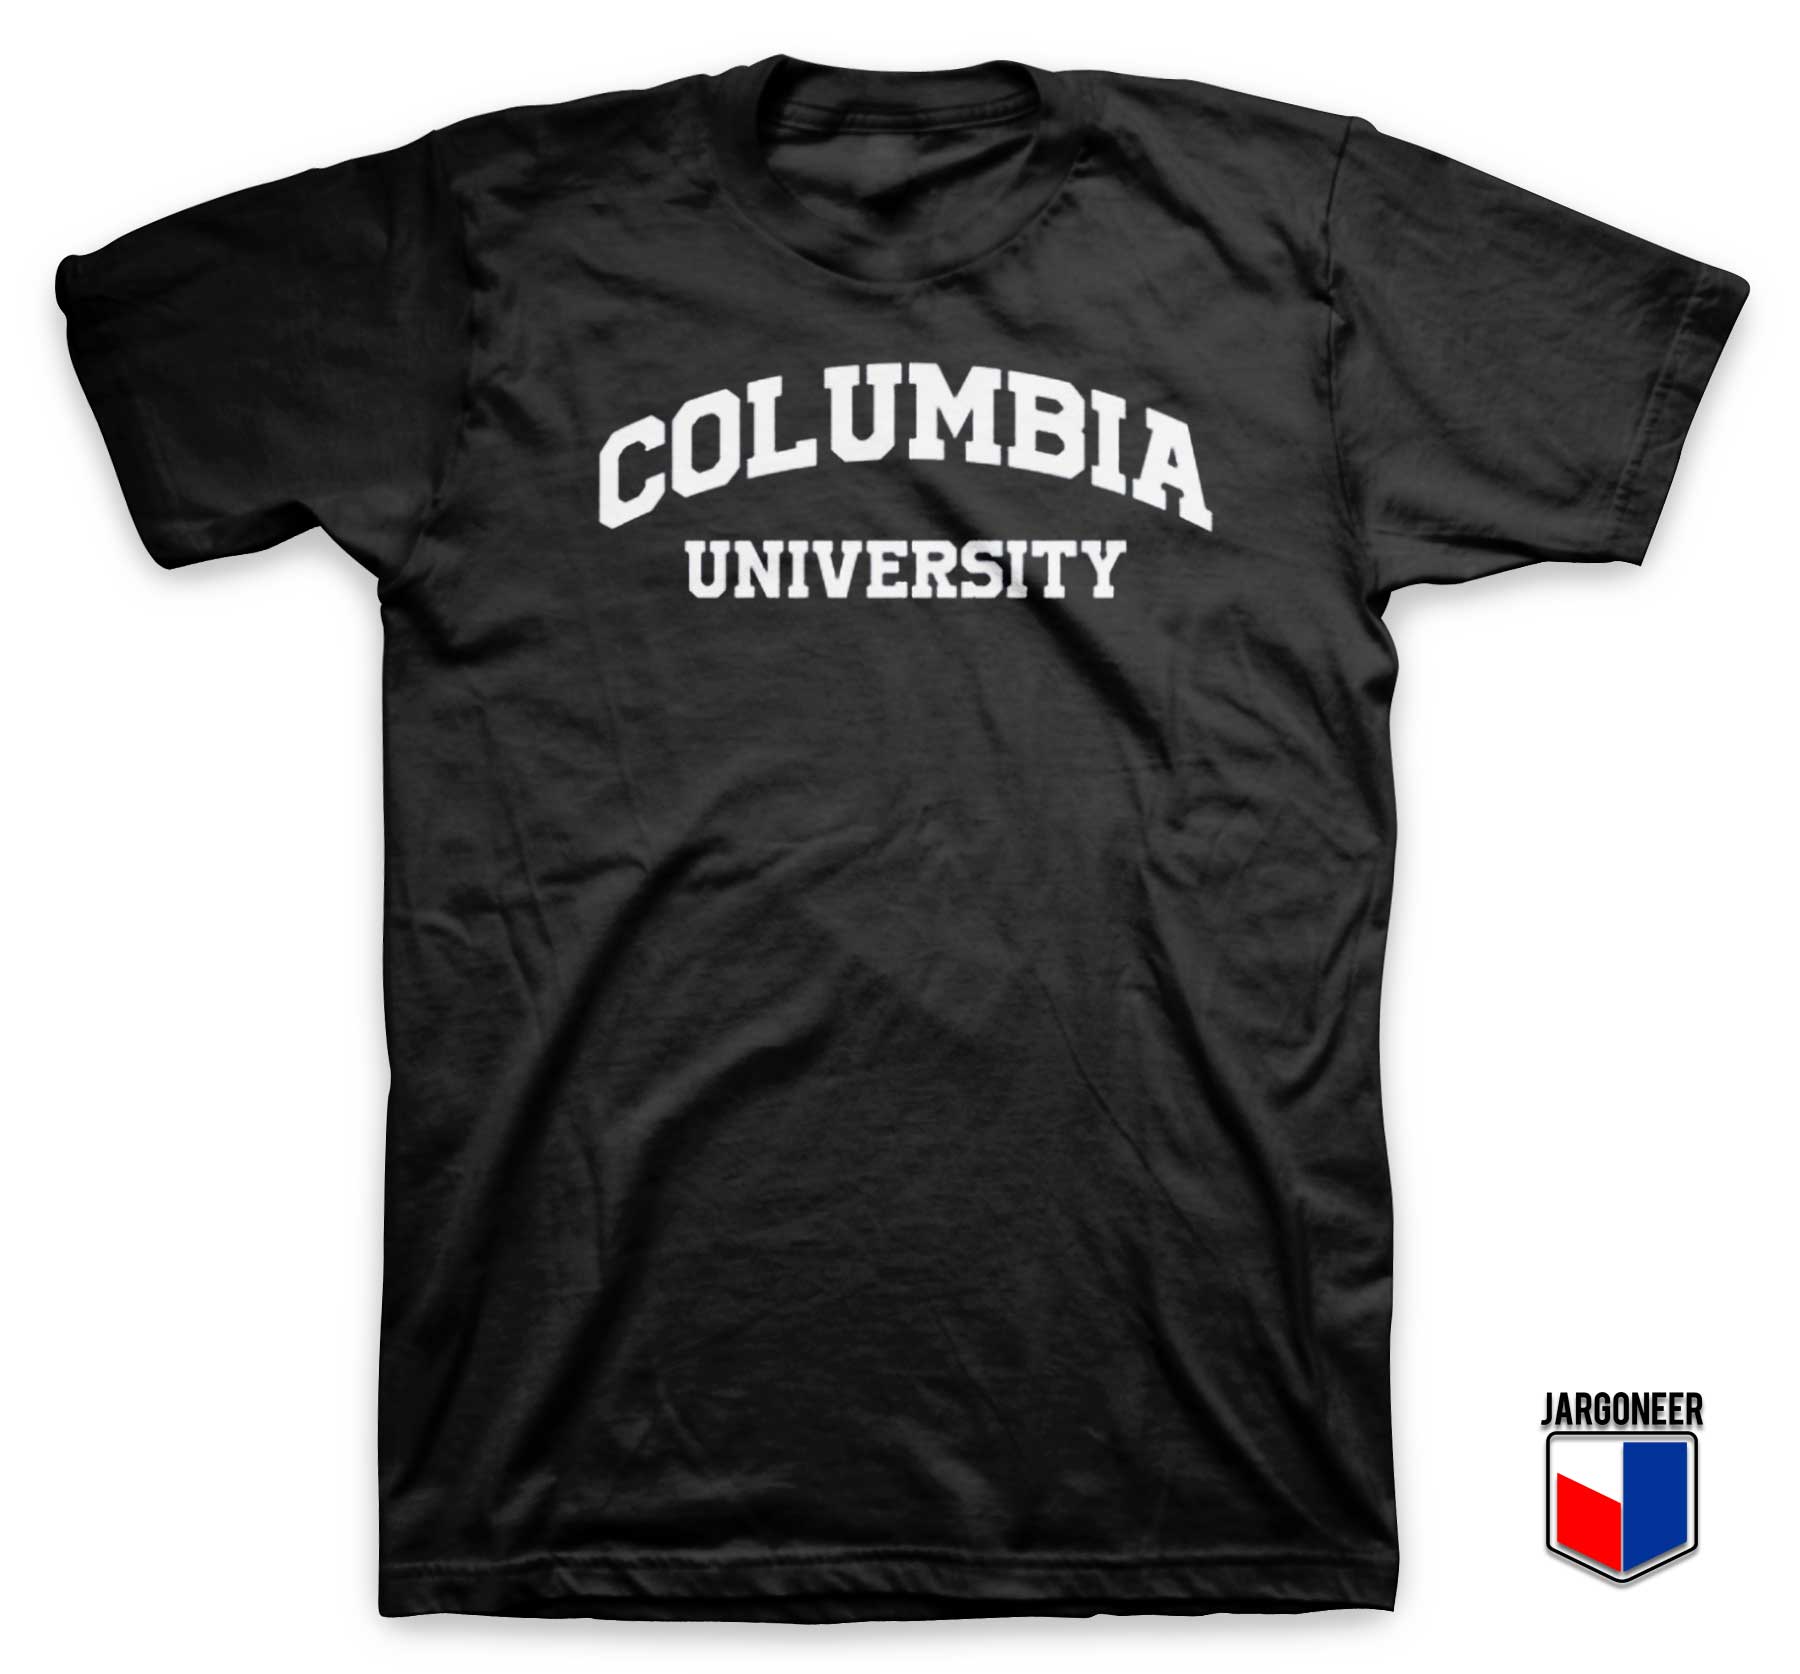 Columbia University T Shirt - Shop Unique Graphic Cool Shirt Designs